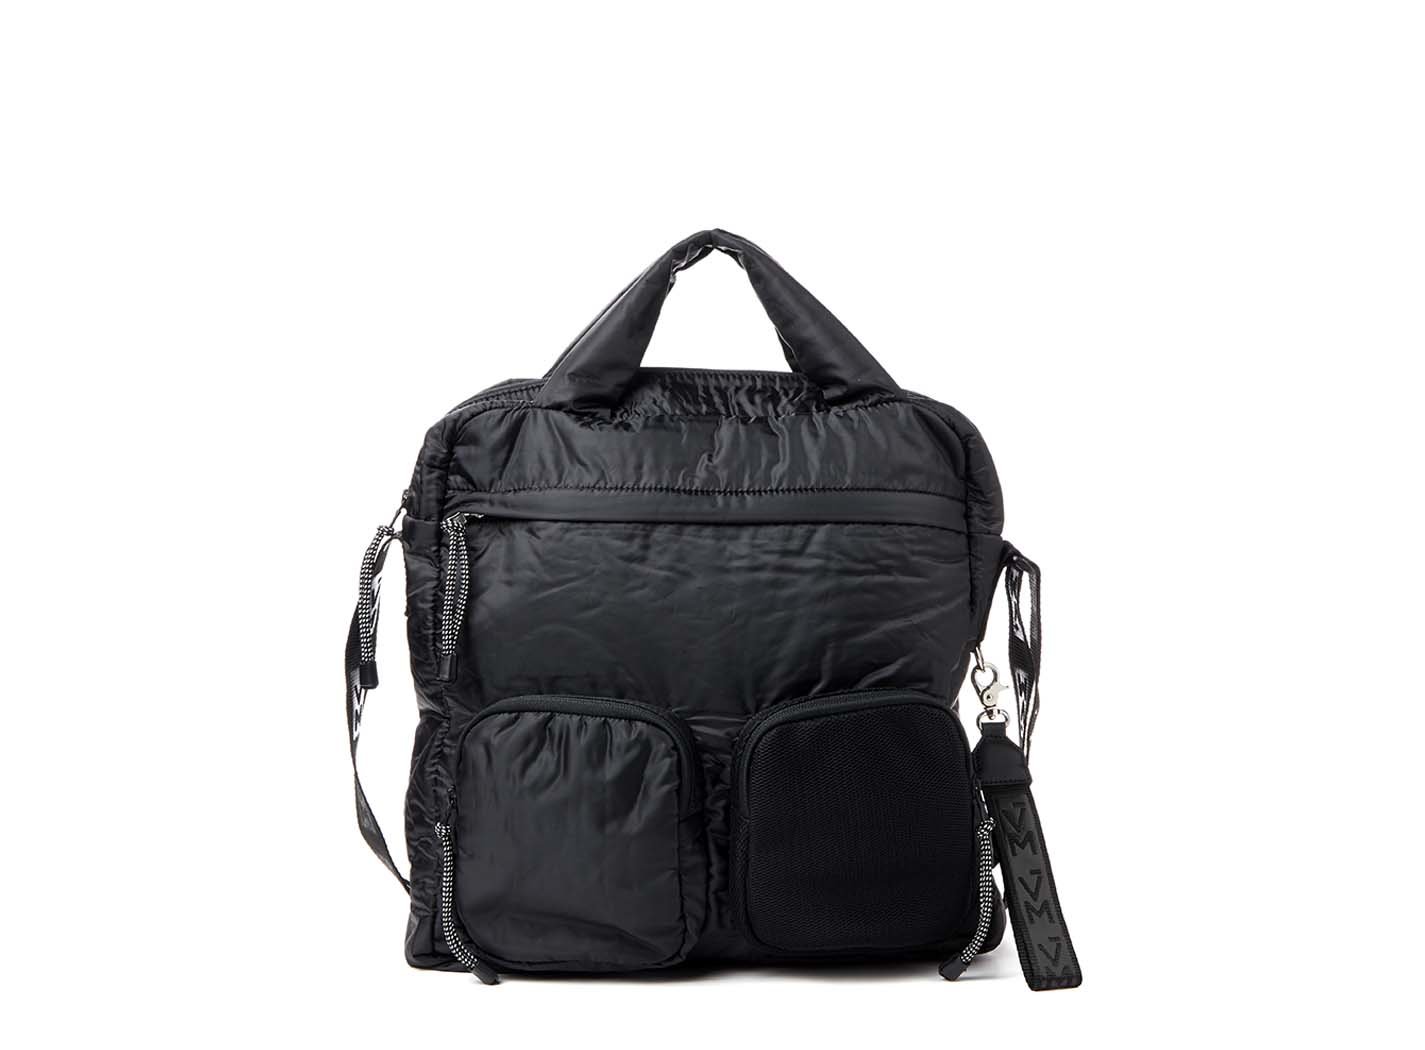 Dakota Black Multi-Pocket Tote Bag